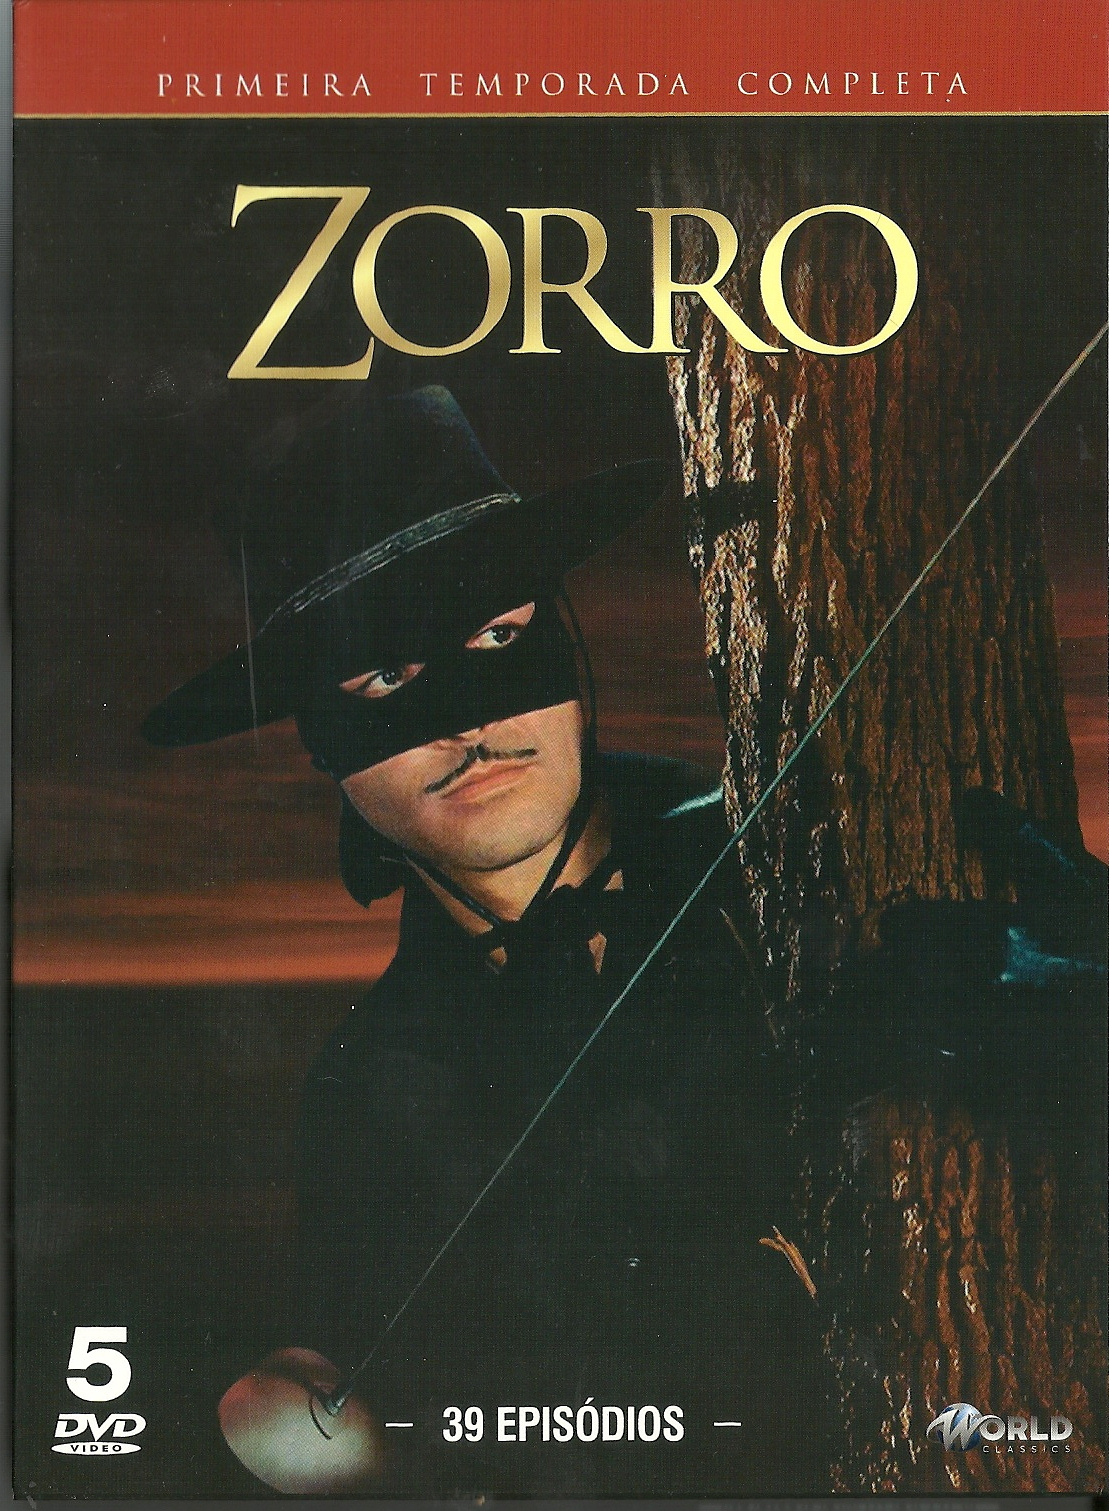 ZORRO 1ª TEMPORADA COMPLETA - Digital - 5 DVDs - 39 EPIS.